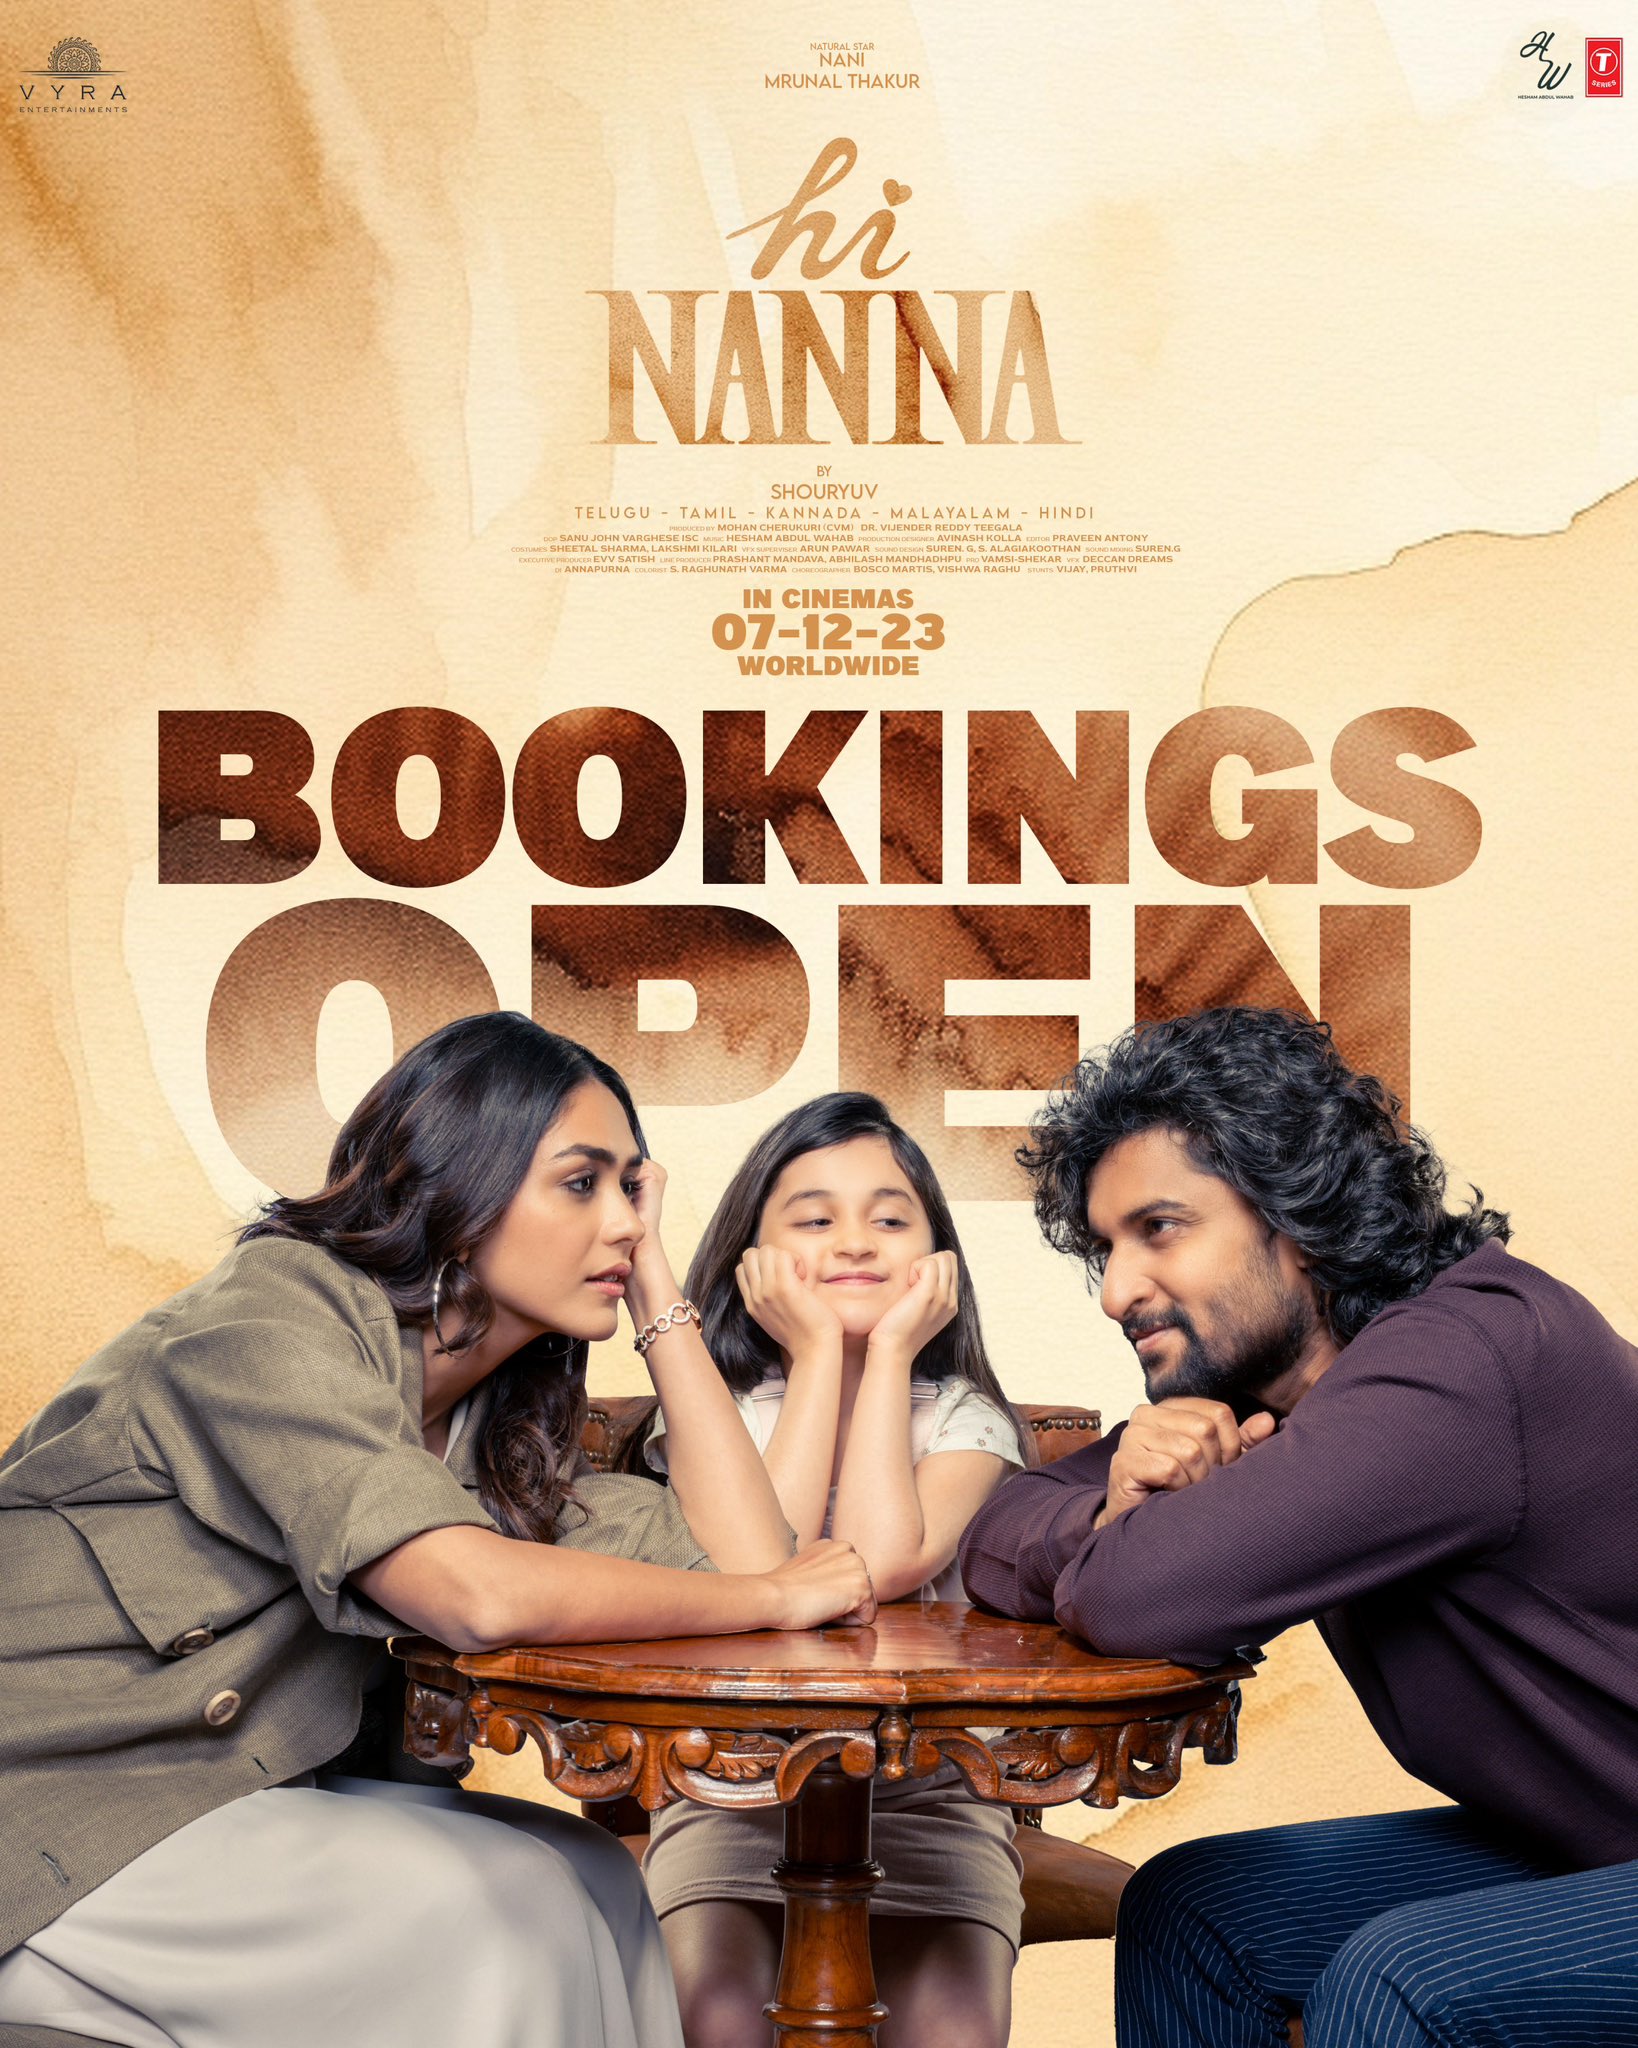 فیلم سلام نانا Hi Nanna